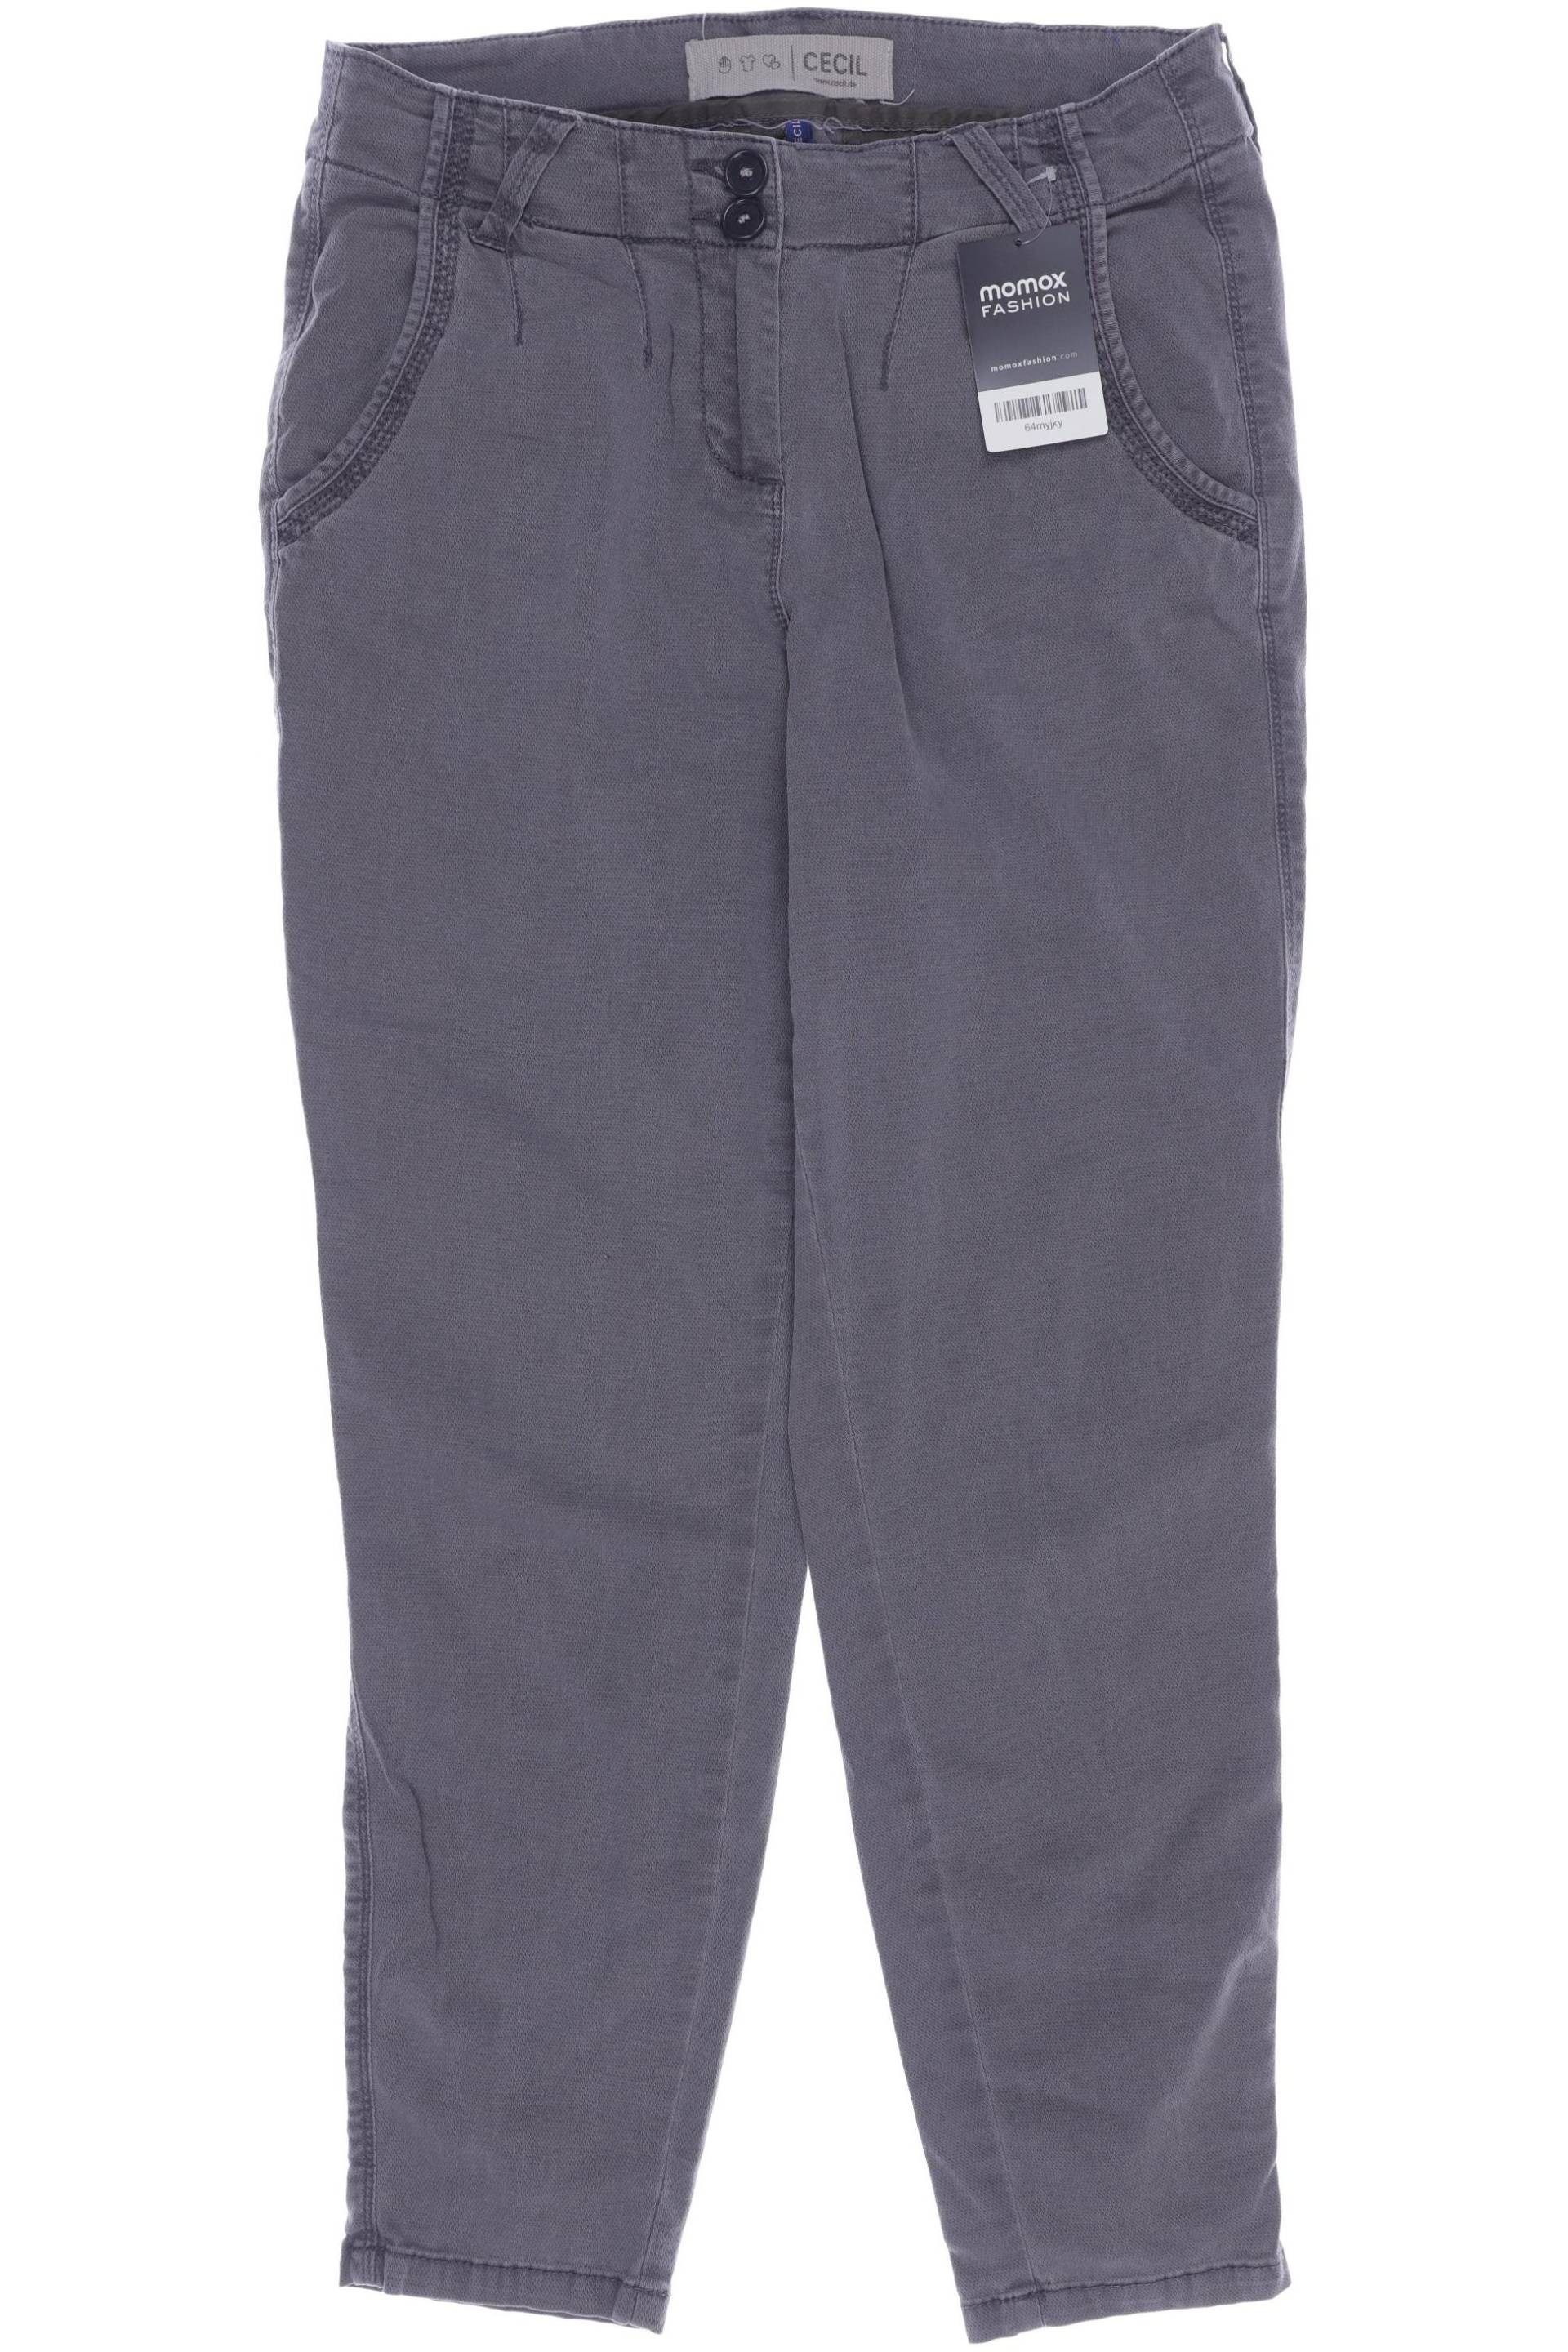 Cecil Damen Jeans, grau, Gr. 36 von cecil